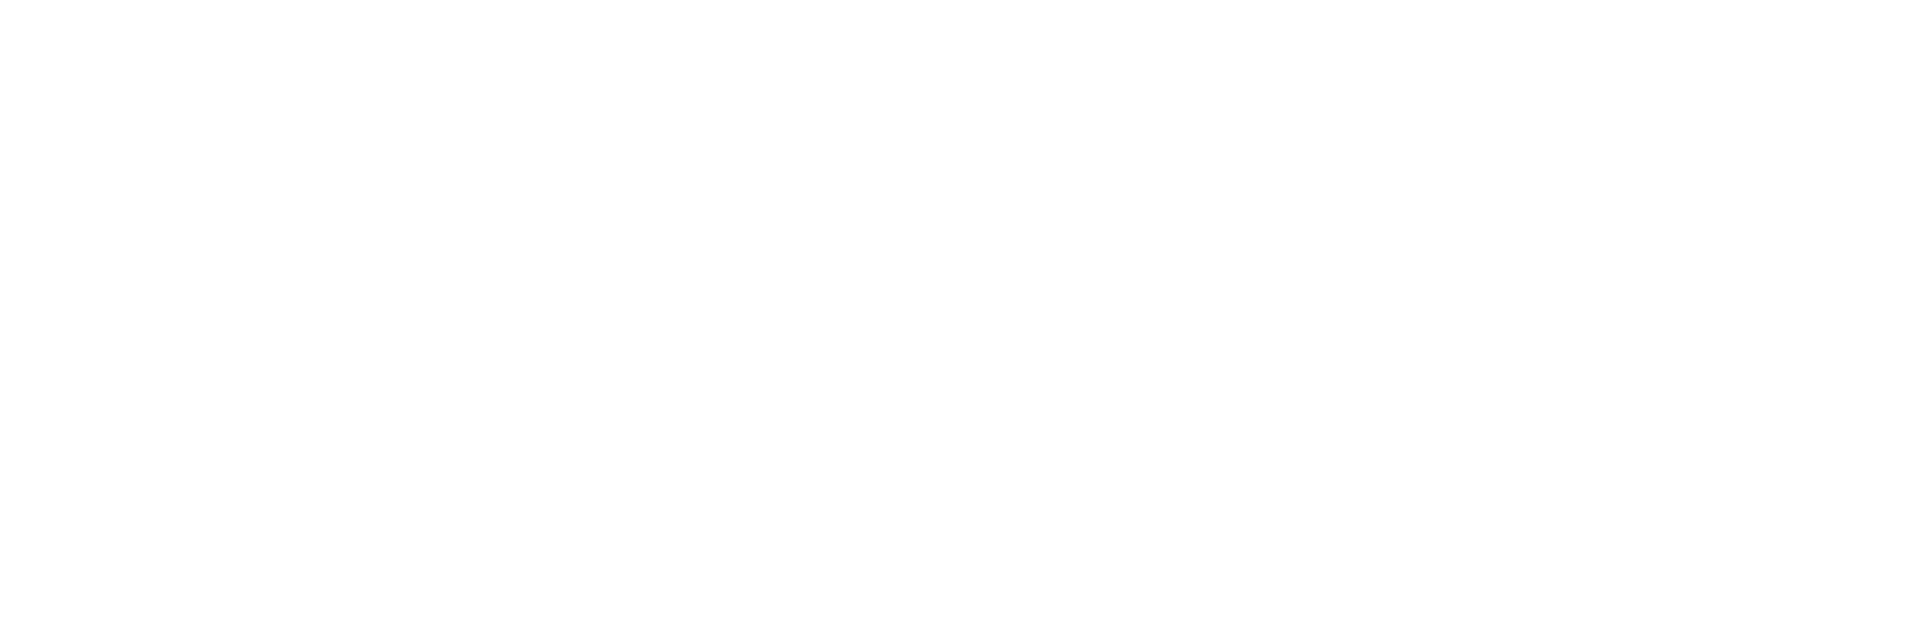 Elk Funeral Services Logo